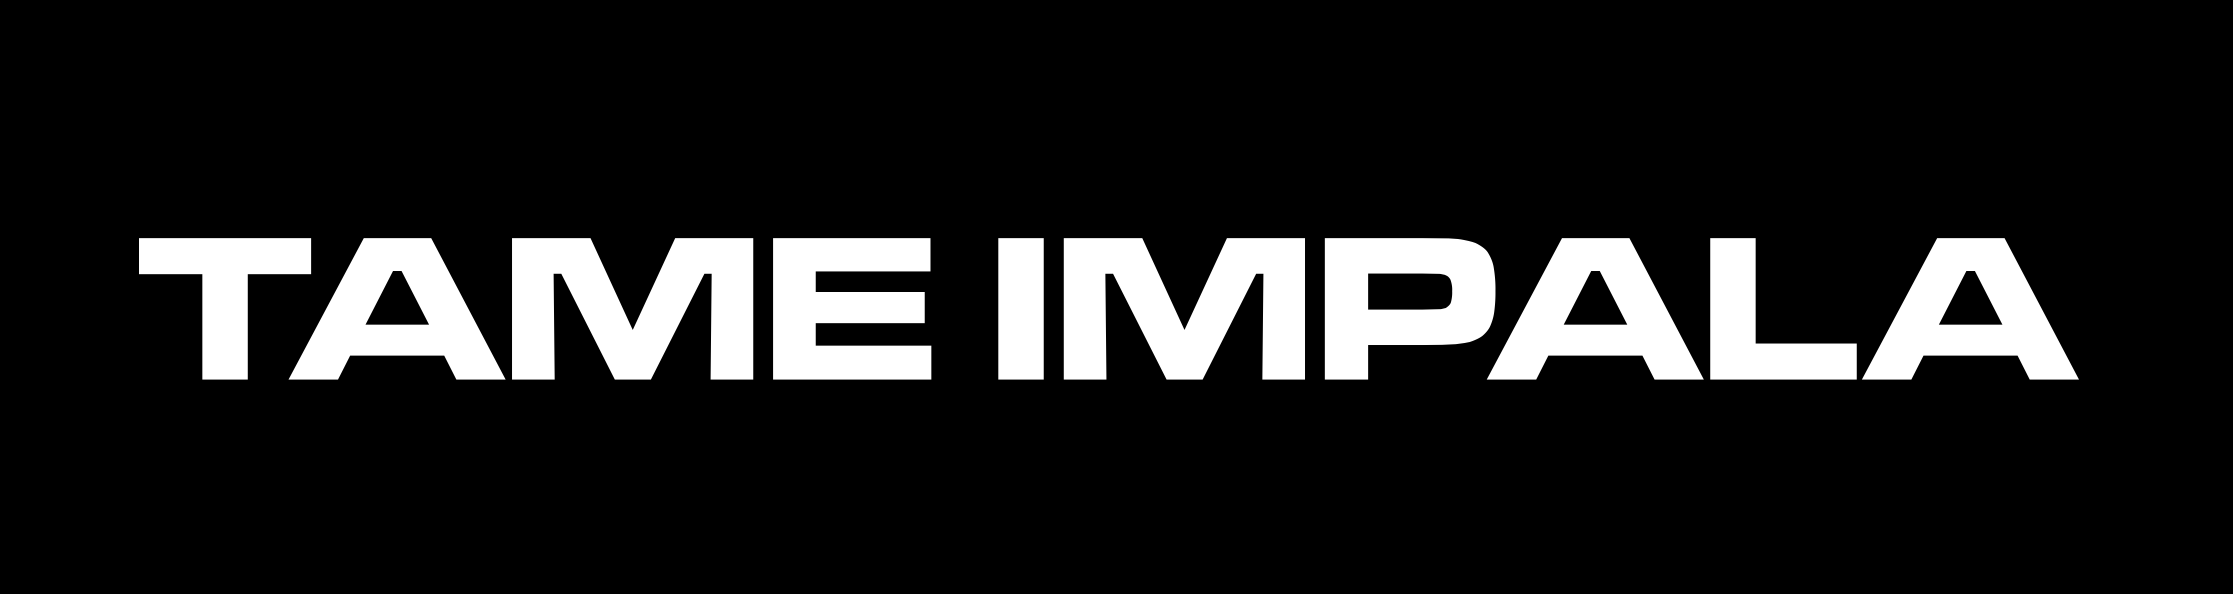 Tame Impala Logo - TAME IMPALA logo an adaptation of Eurostile Extendend #2? | Typophile